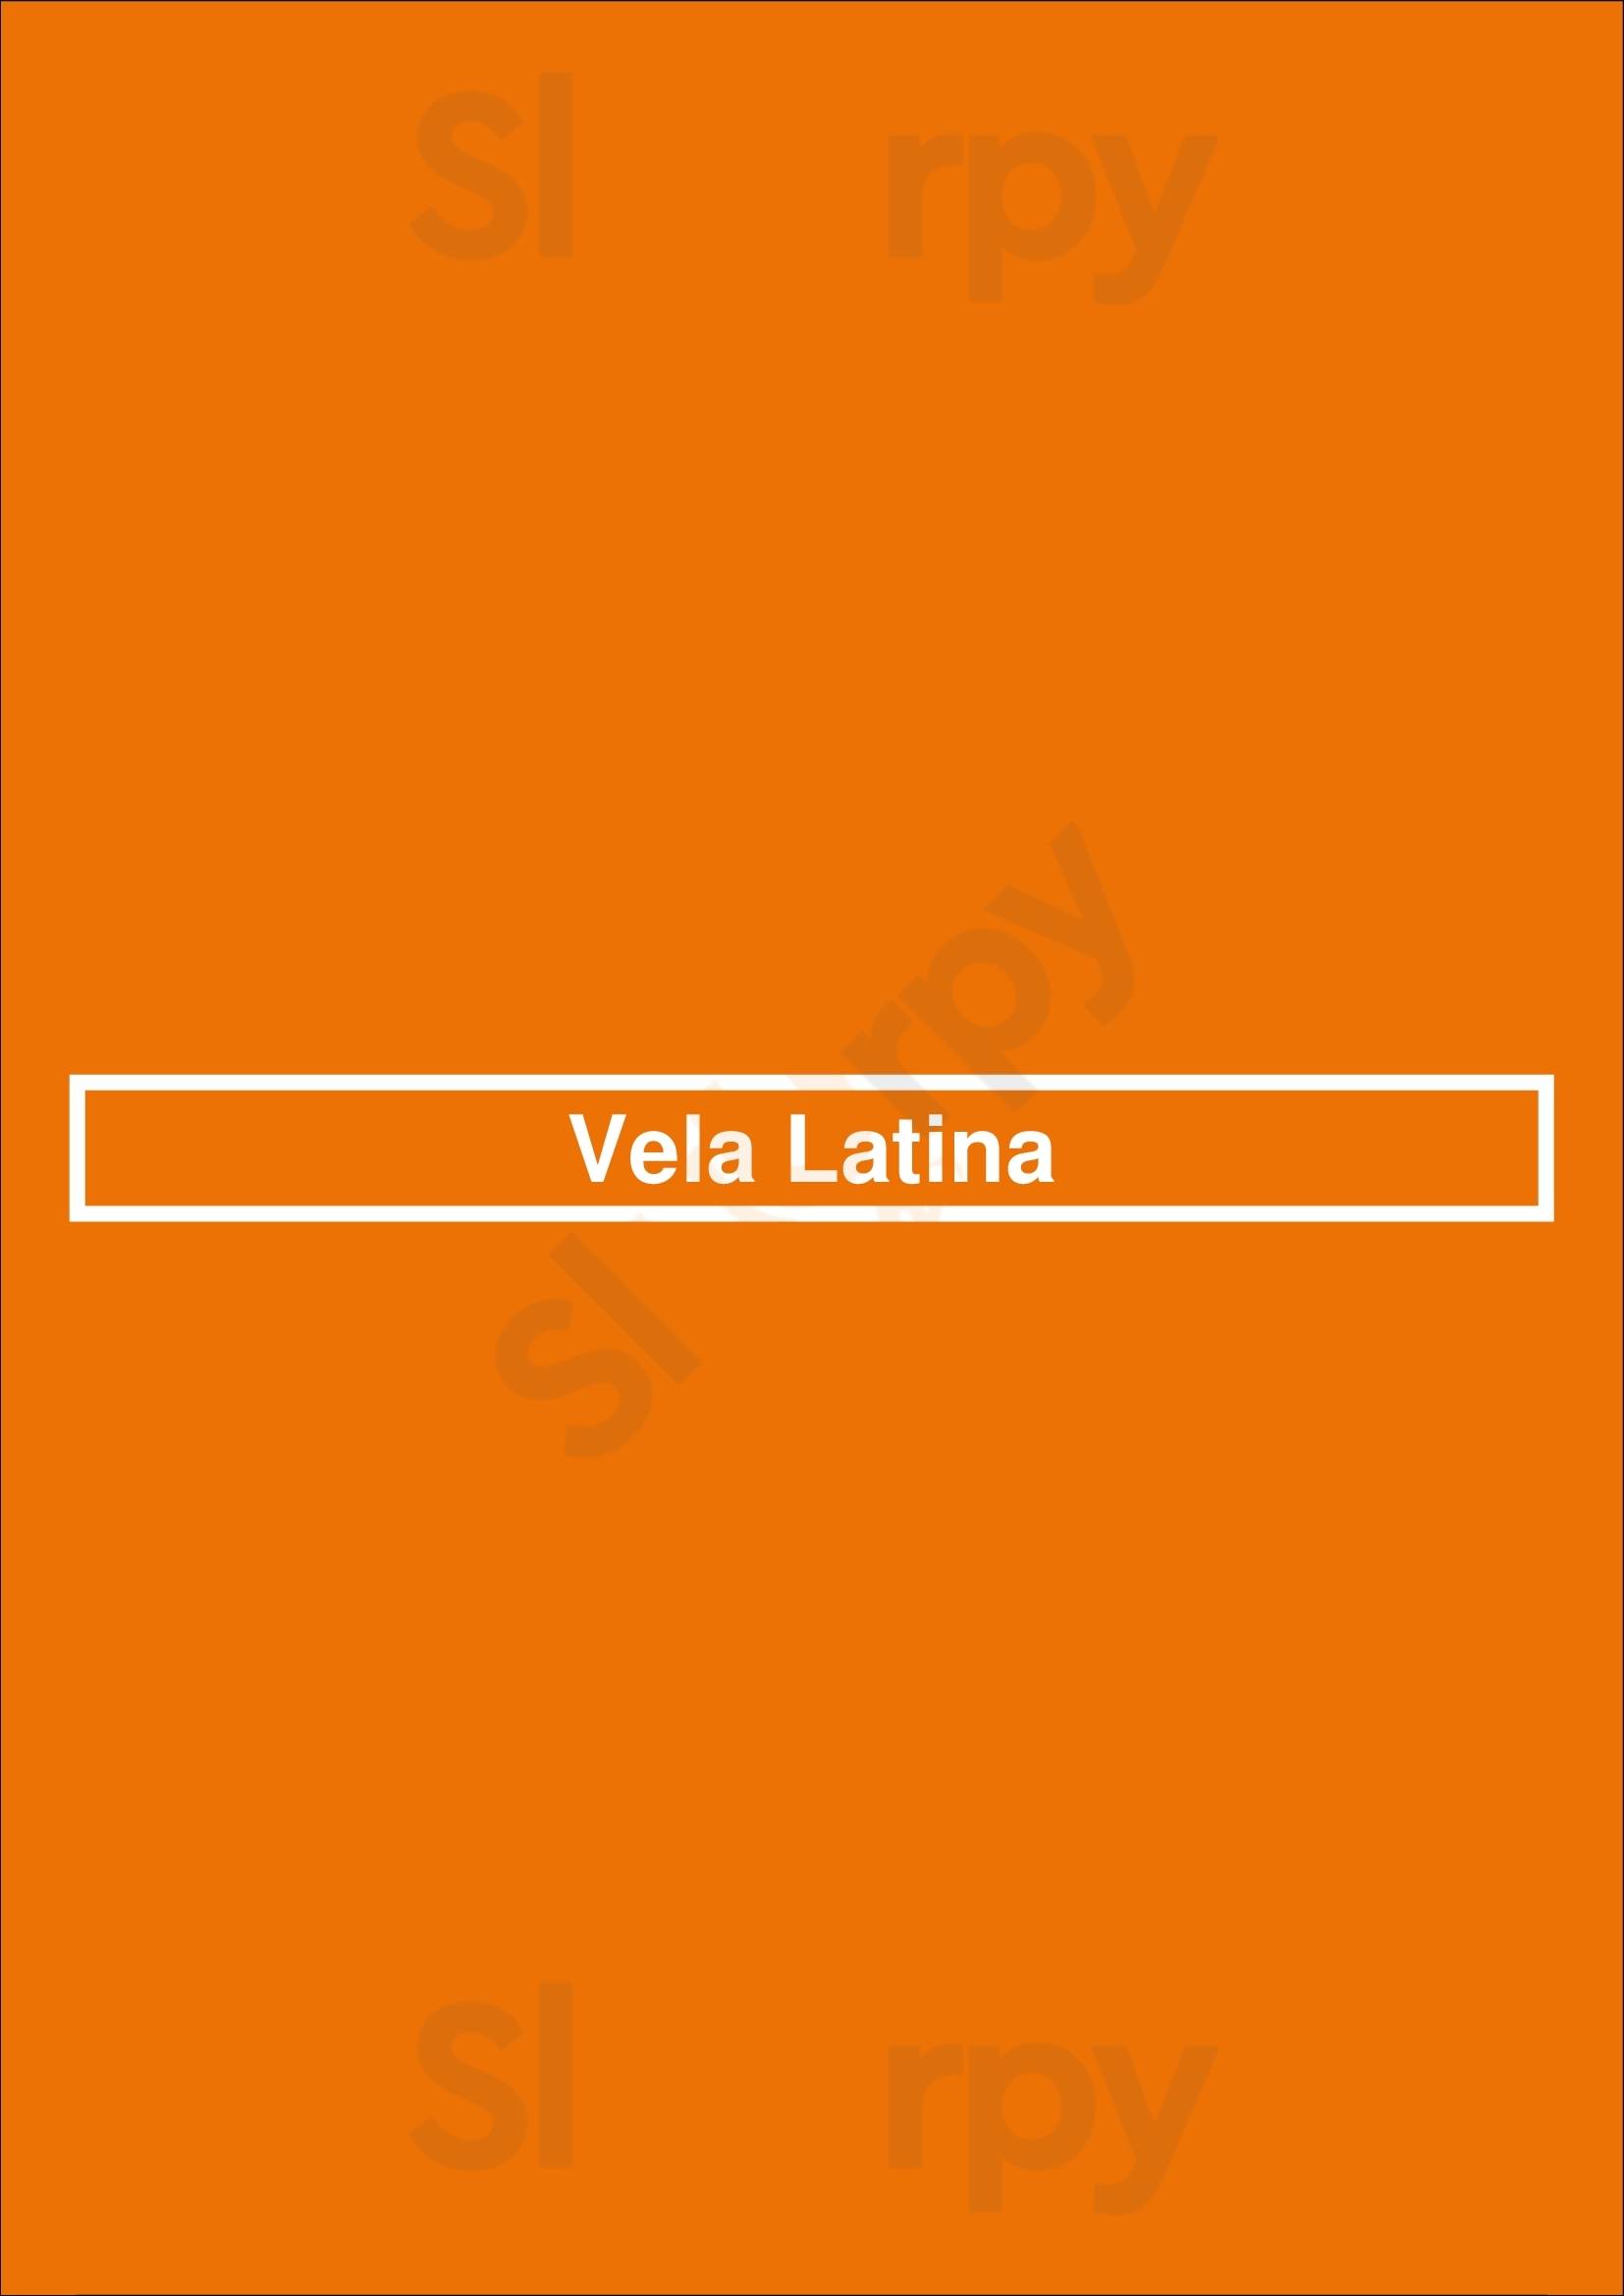 Vela Latina Lisboa Menu - 1